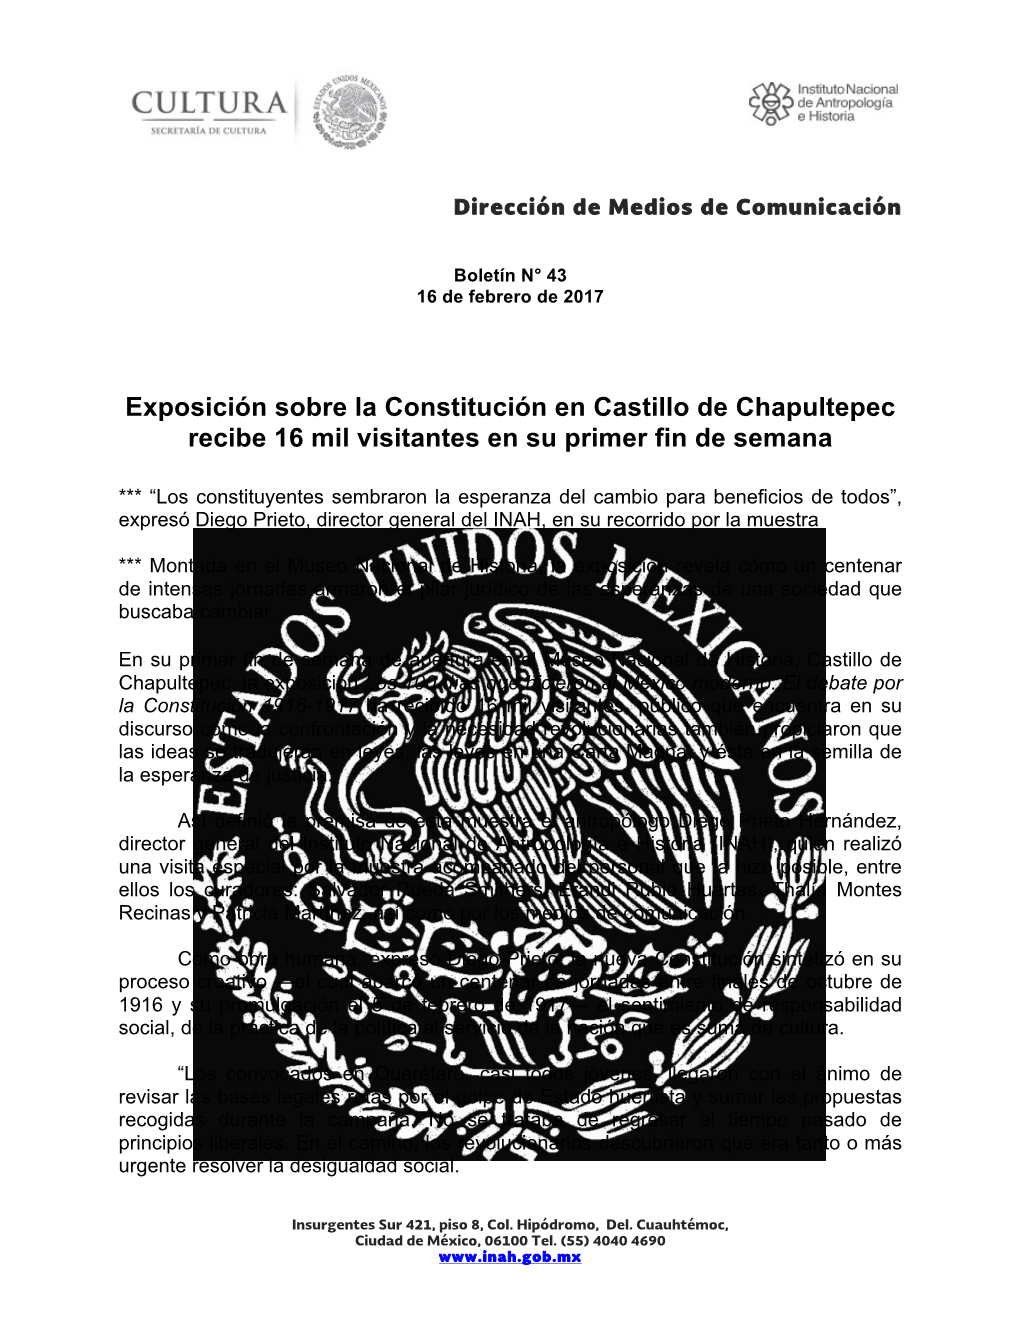 Exposición Sobre La Constitución En Castillo De Chapultepec Recibe 16 Mil Visitantes En Su Primer Fin De Semana